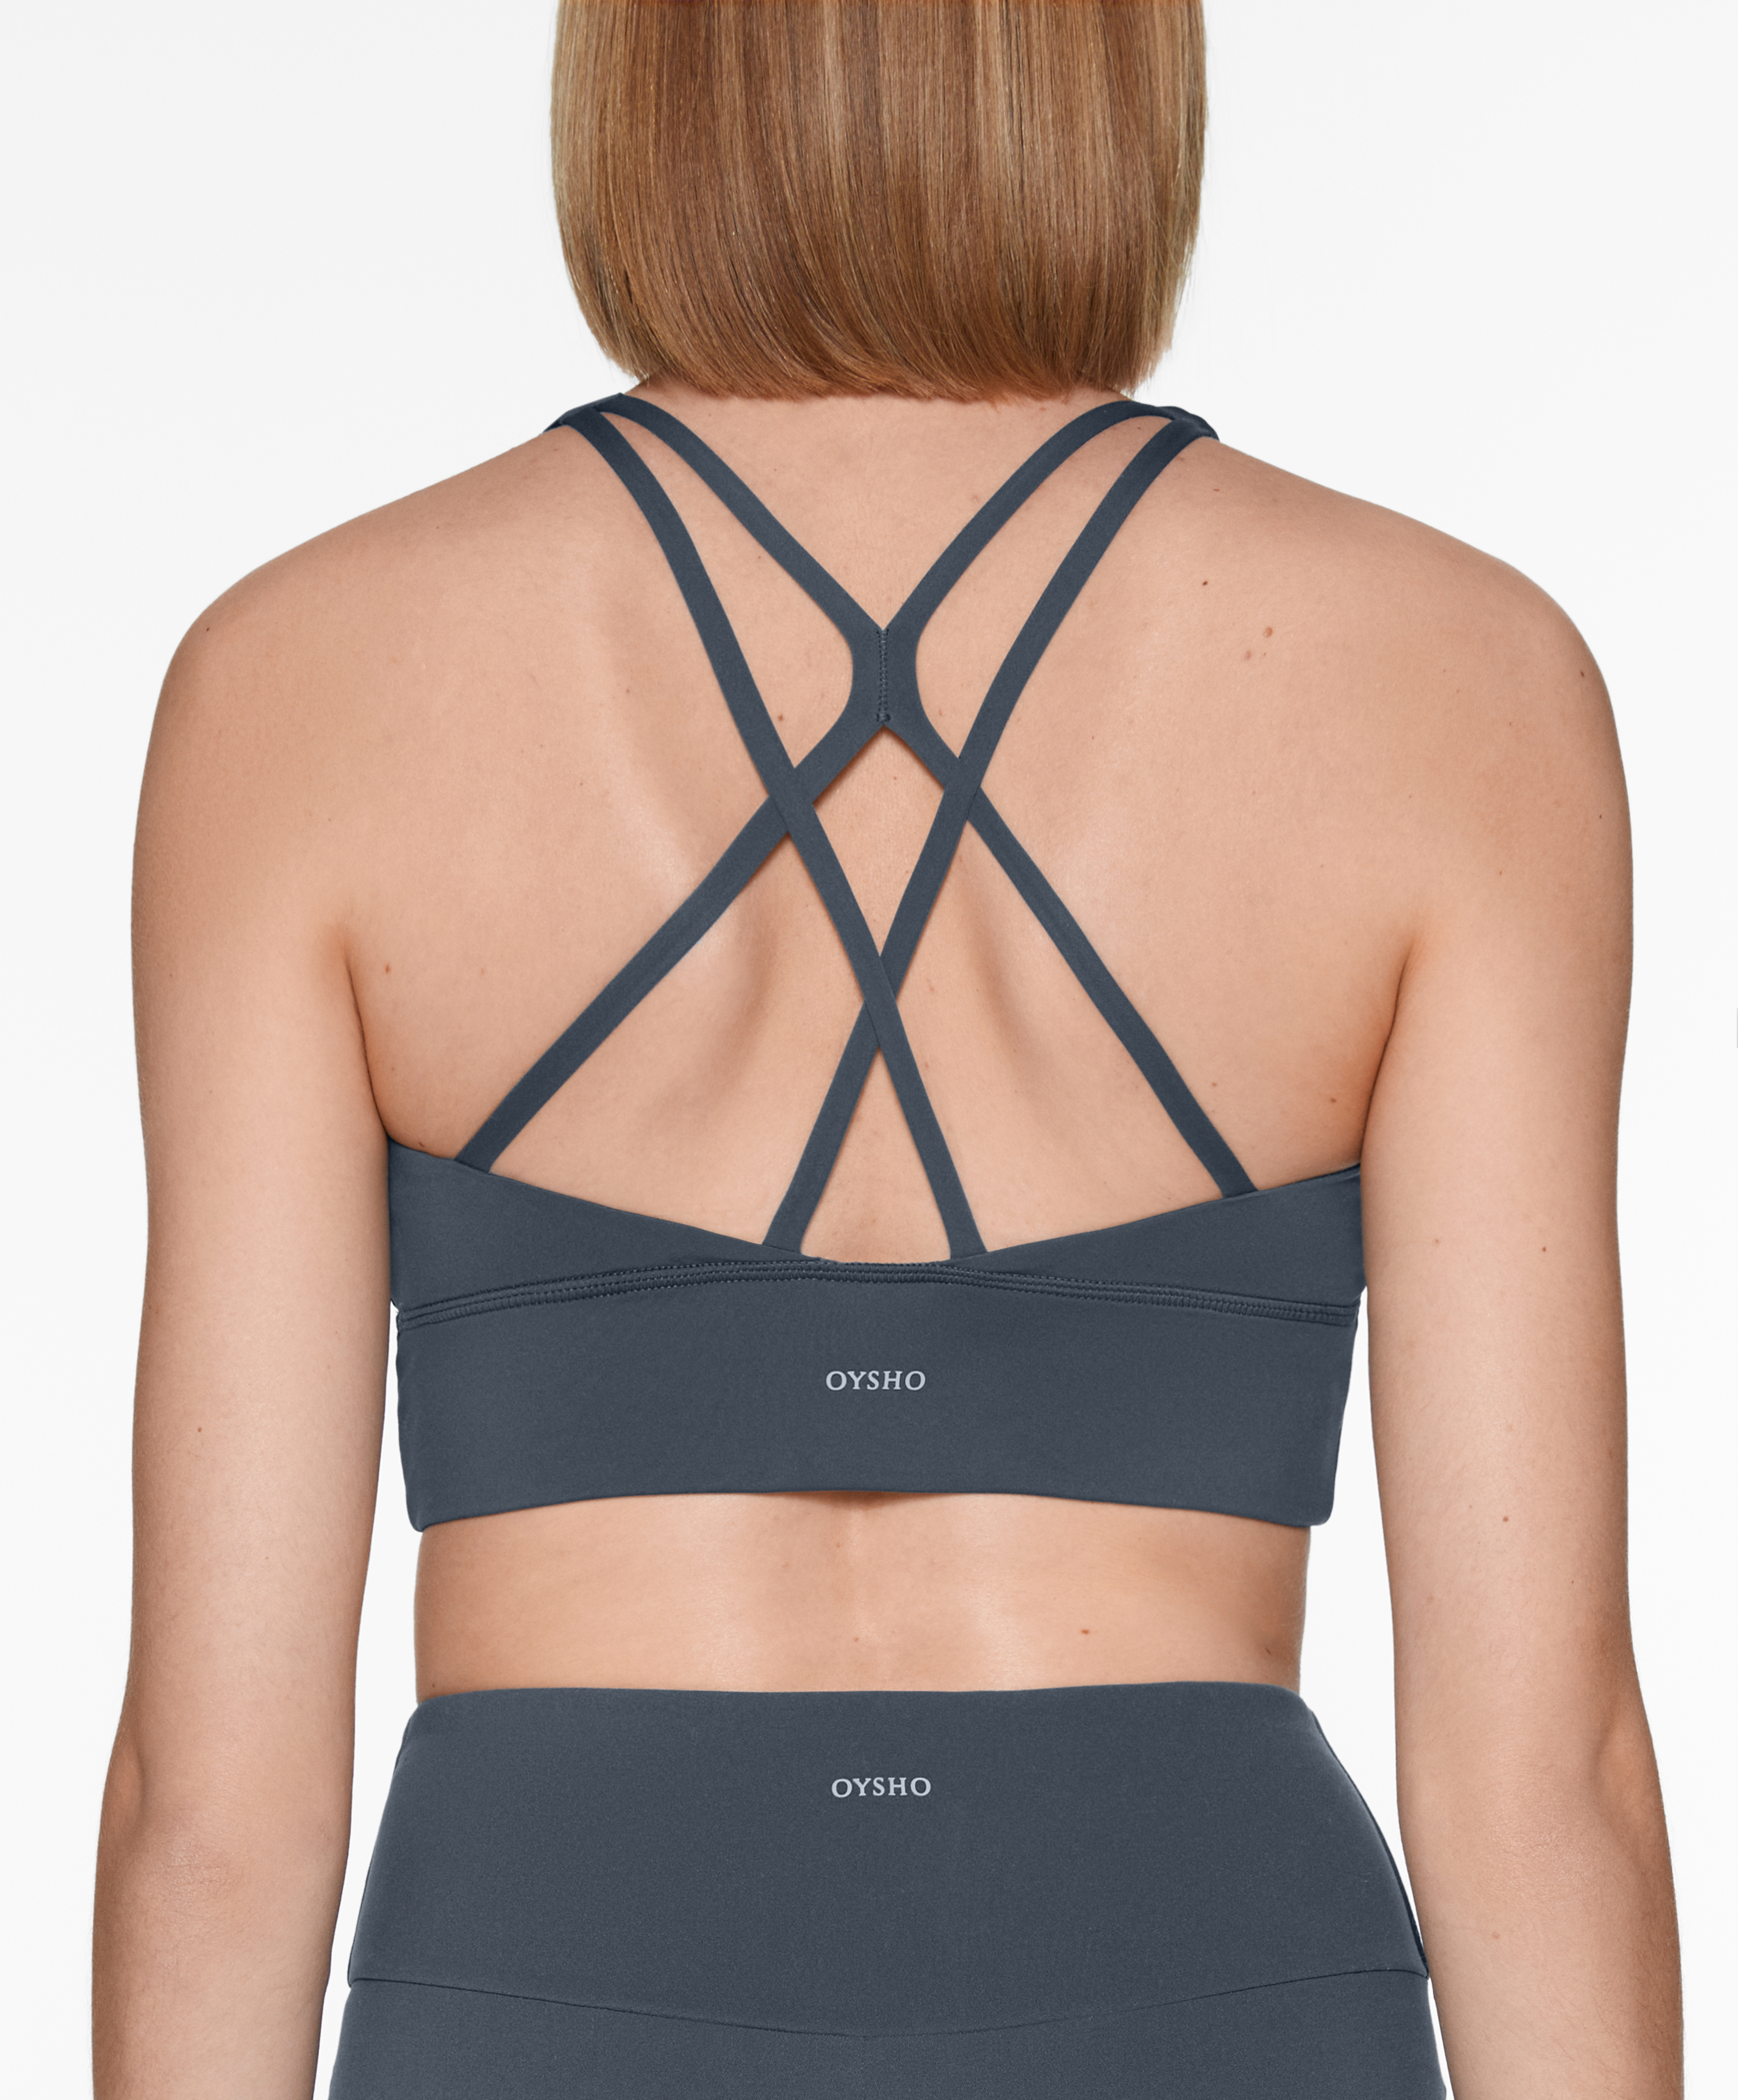 Mesh sports bra - Sport bras - By products - OYSHO SPORT, Oysho Islas  Canarias